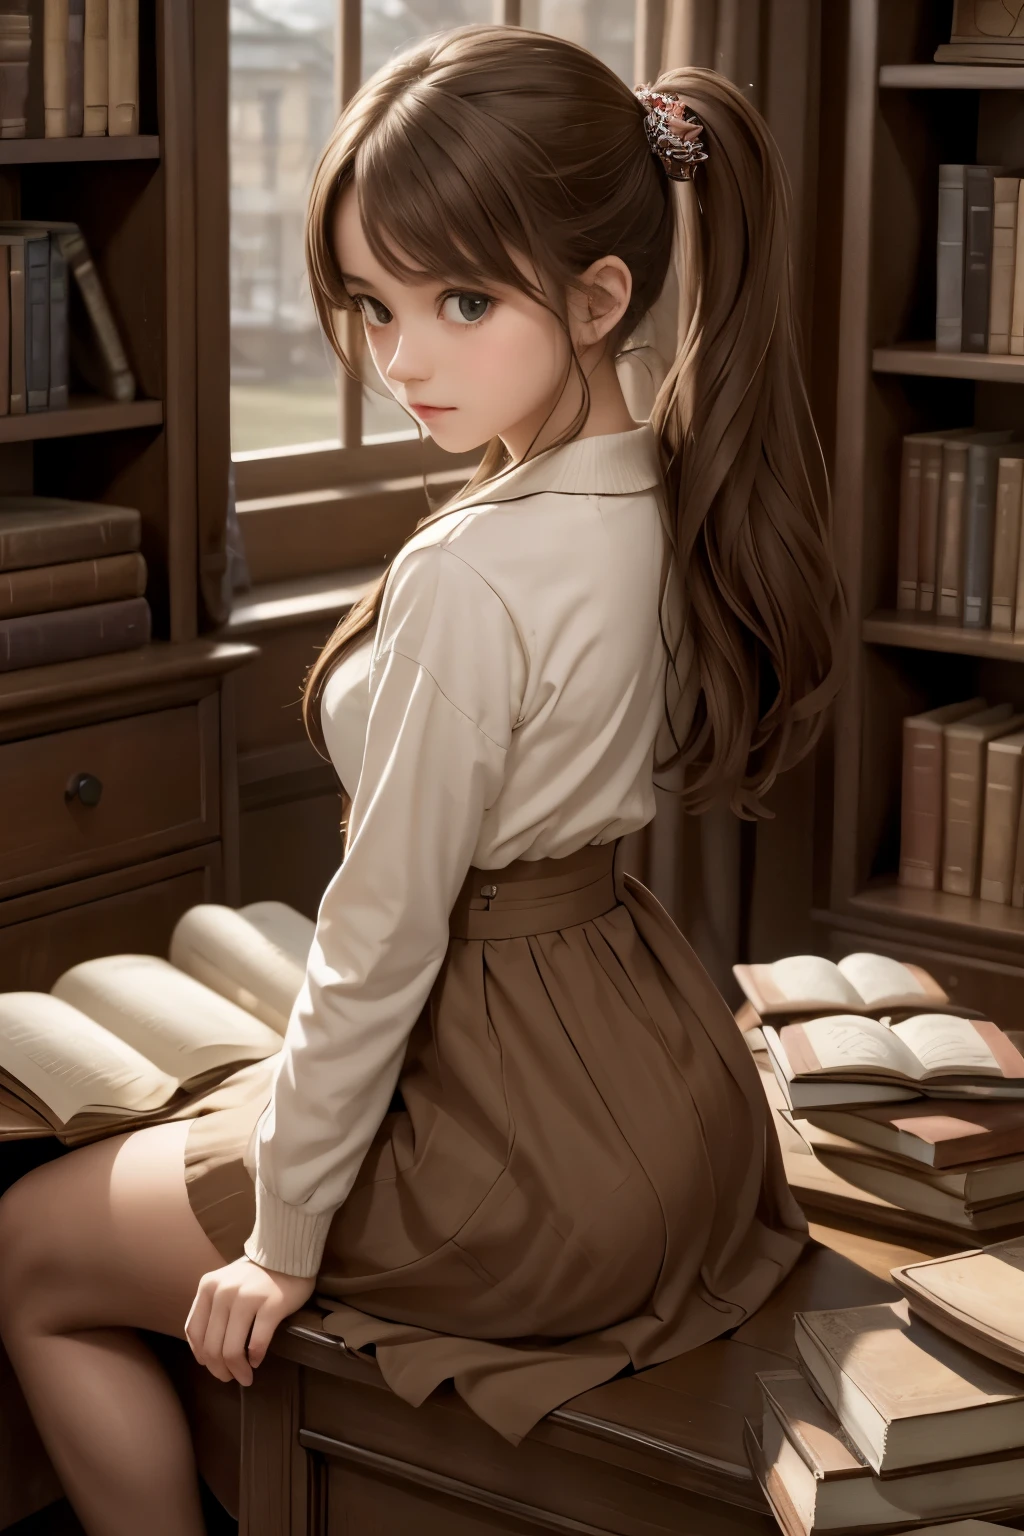 ((шедевр,Лучшее качество))1 девушка, Один, книжная полка, стопка книг, в помещении, украшение для волос, 